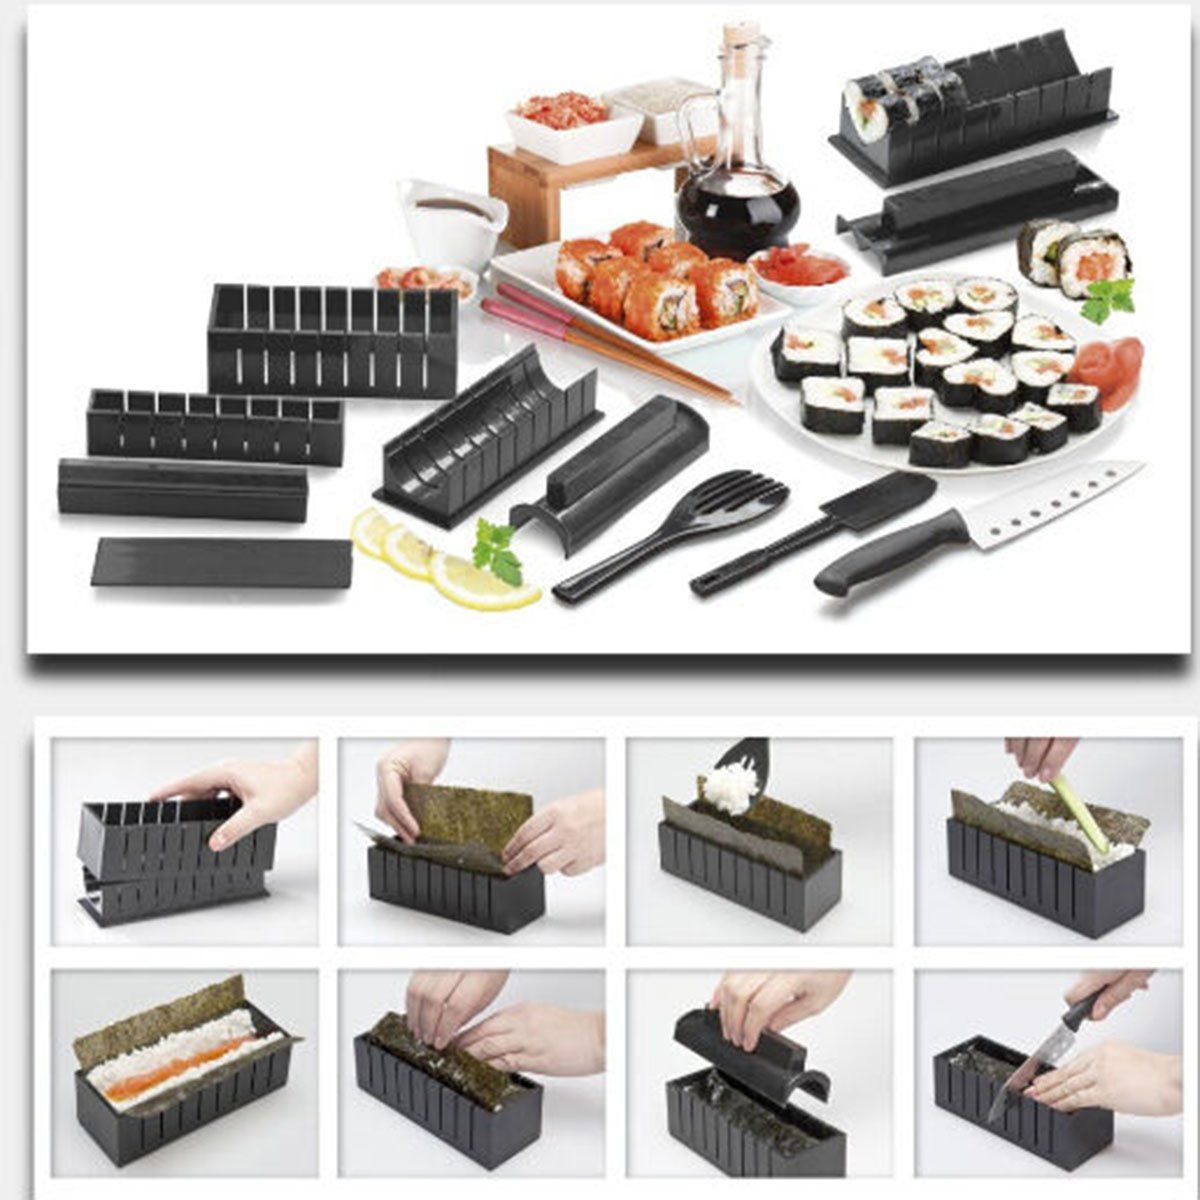 Как пользоваться набор для суши и роллов фото 11